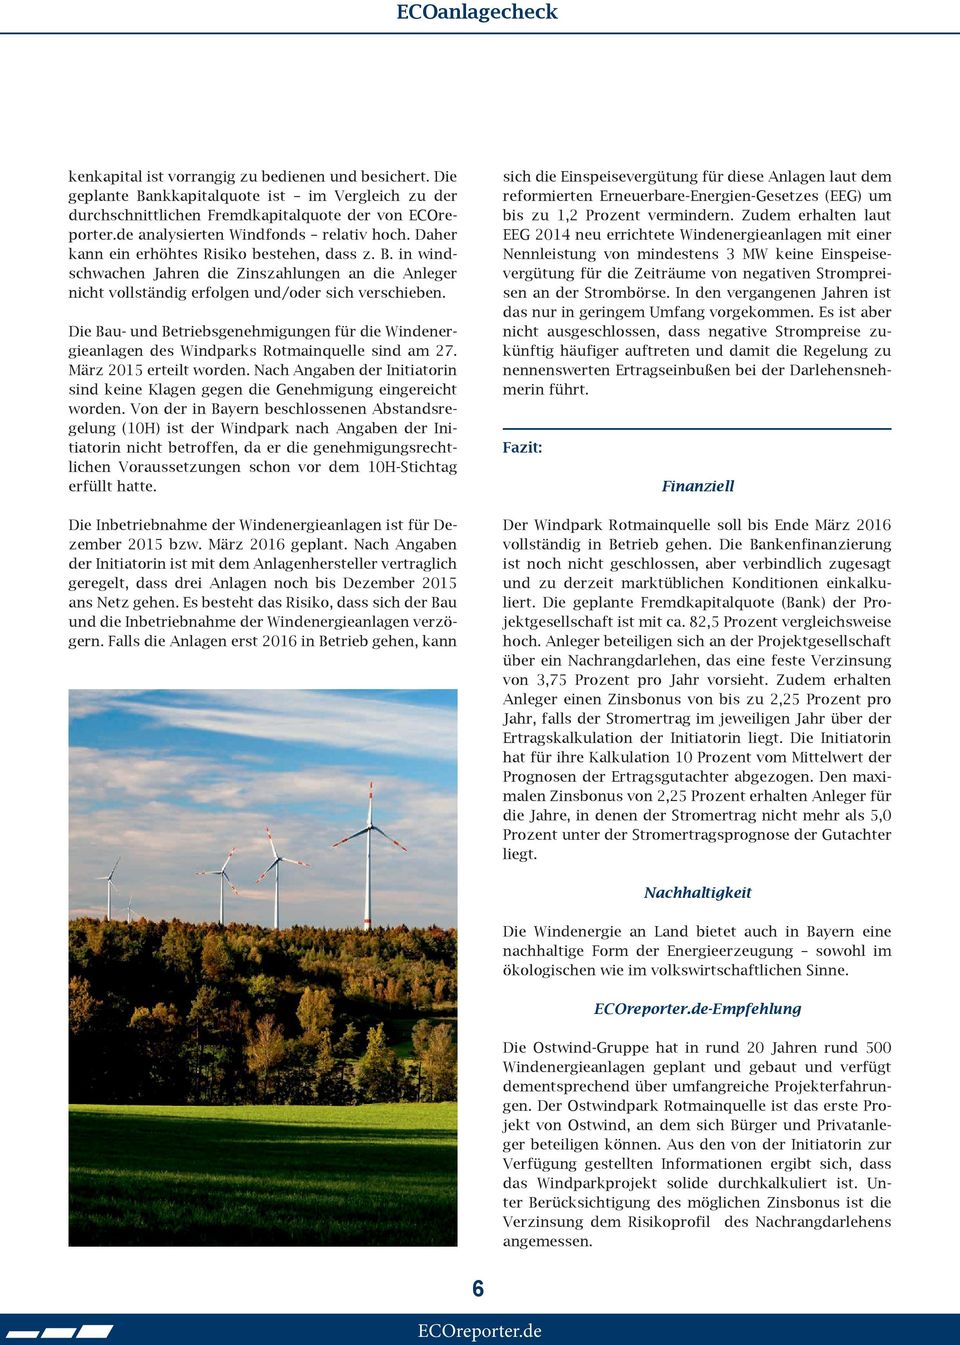 Die Bau- und Betriebsgenehmigungen für die Windenergieanlagen des Windparks Rotmainquelle sind am 27. März 2015 erteilt worden.